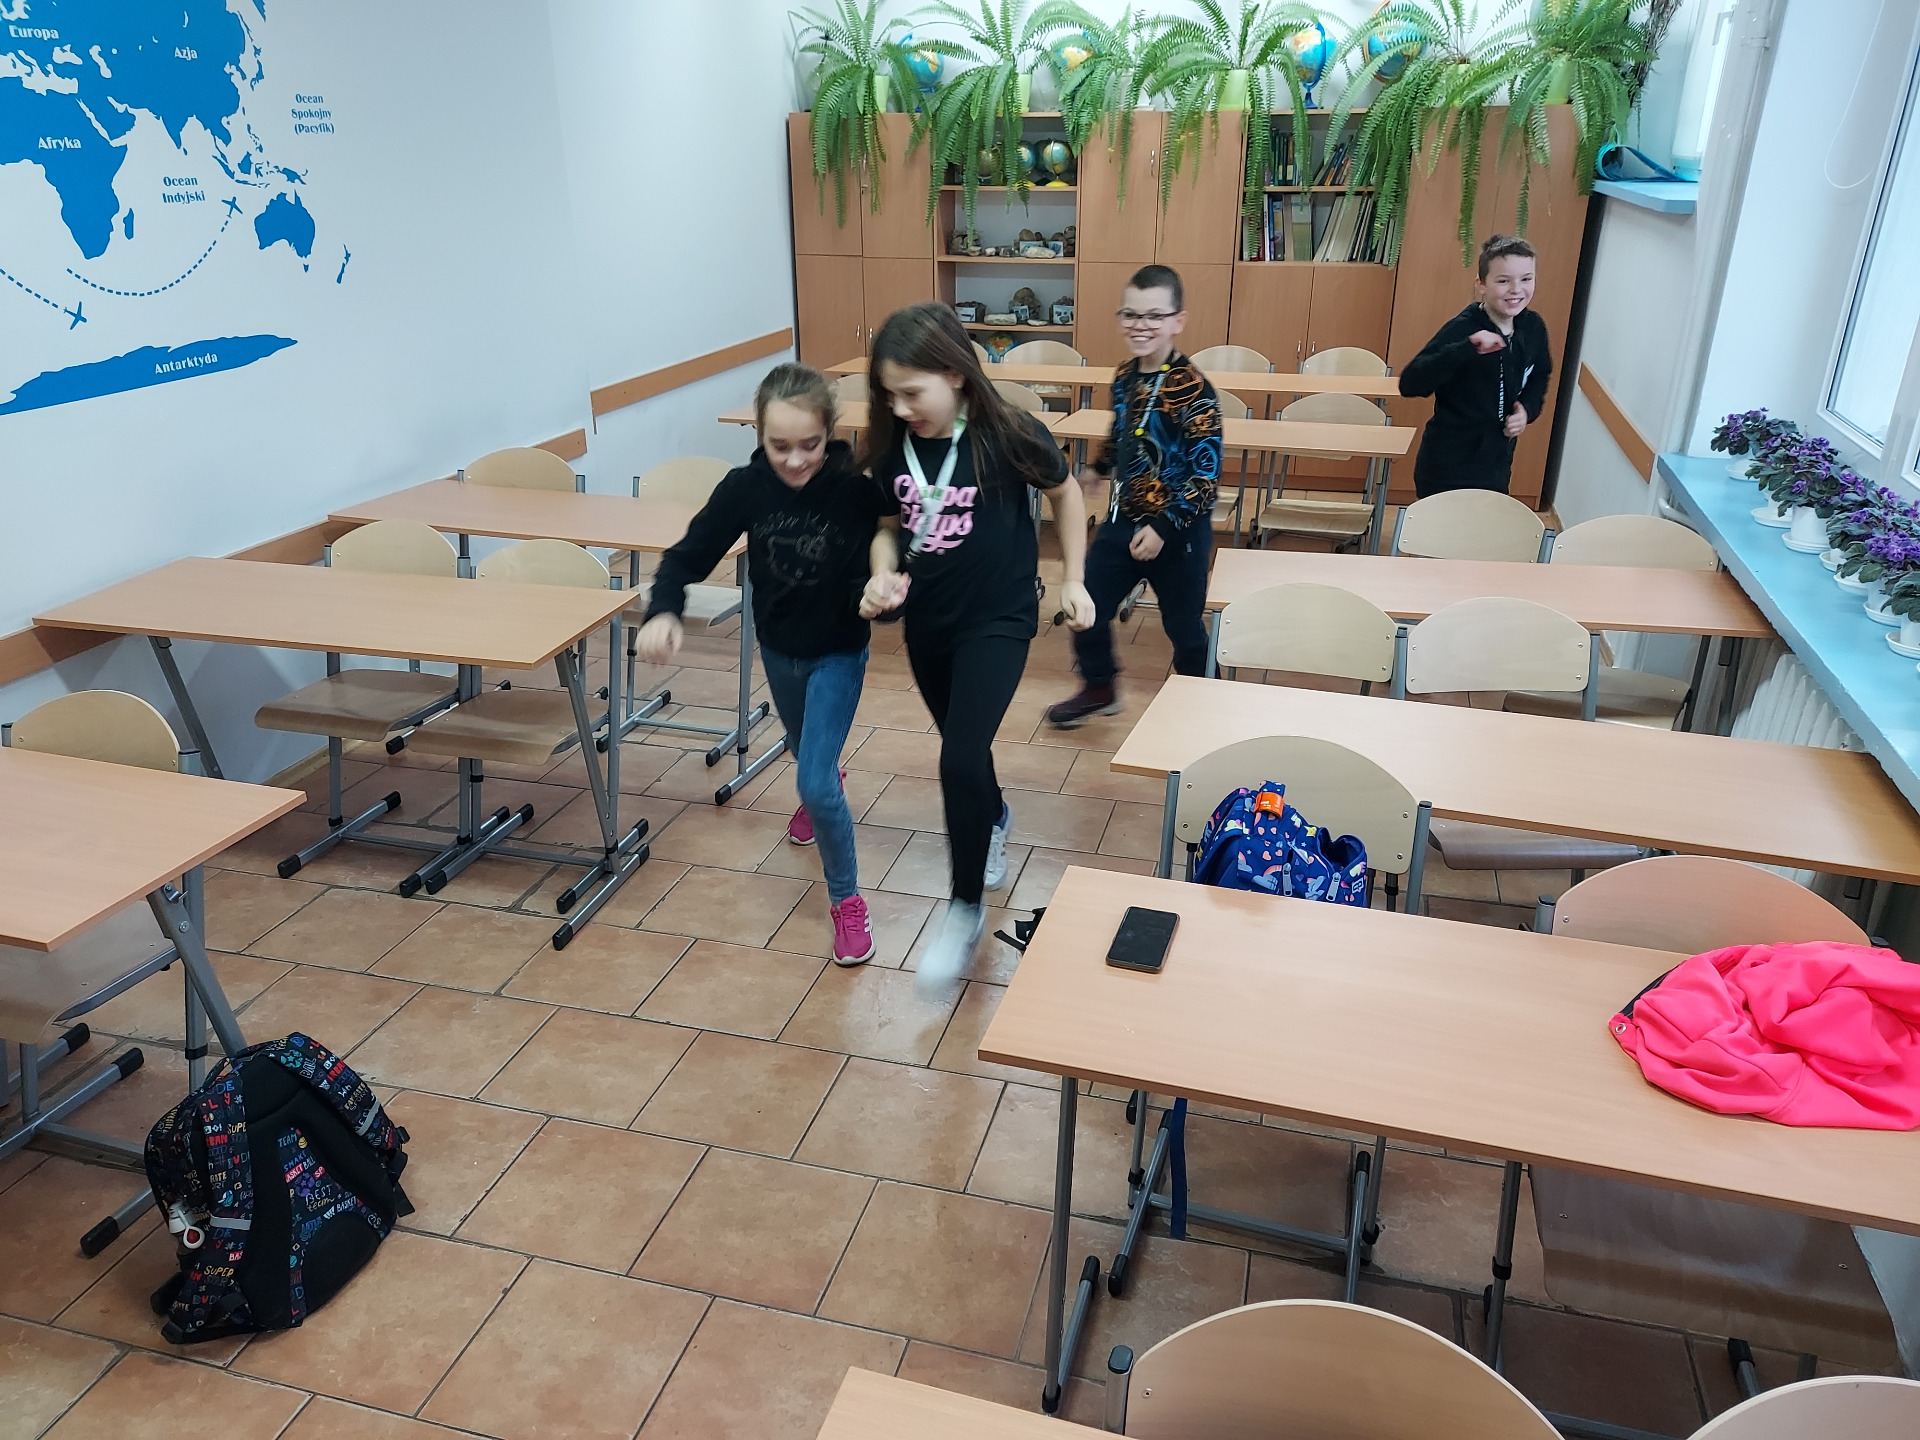 Uczniowie tańczą w sali lekcyjnej